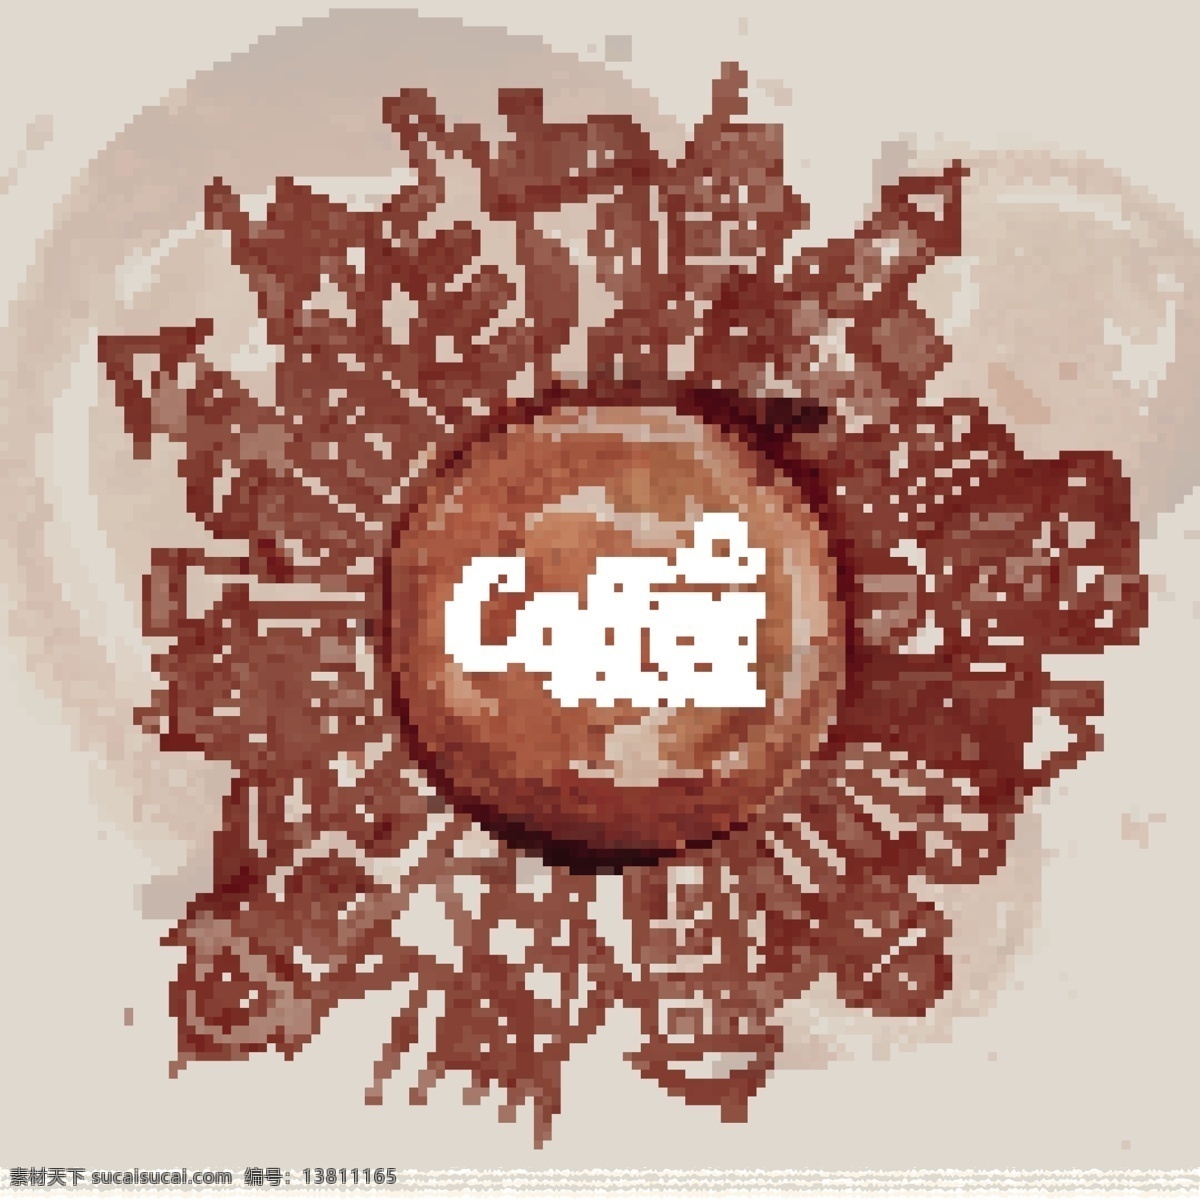 咖啡渍 绘 城市 背景 矢量 coffee eps格式 建筑 咖啡 咖啡屋 旅行 矢量图 含 预览 图 海报 建筑家居